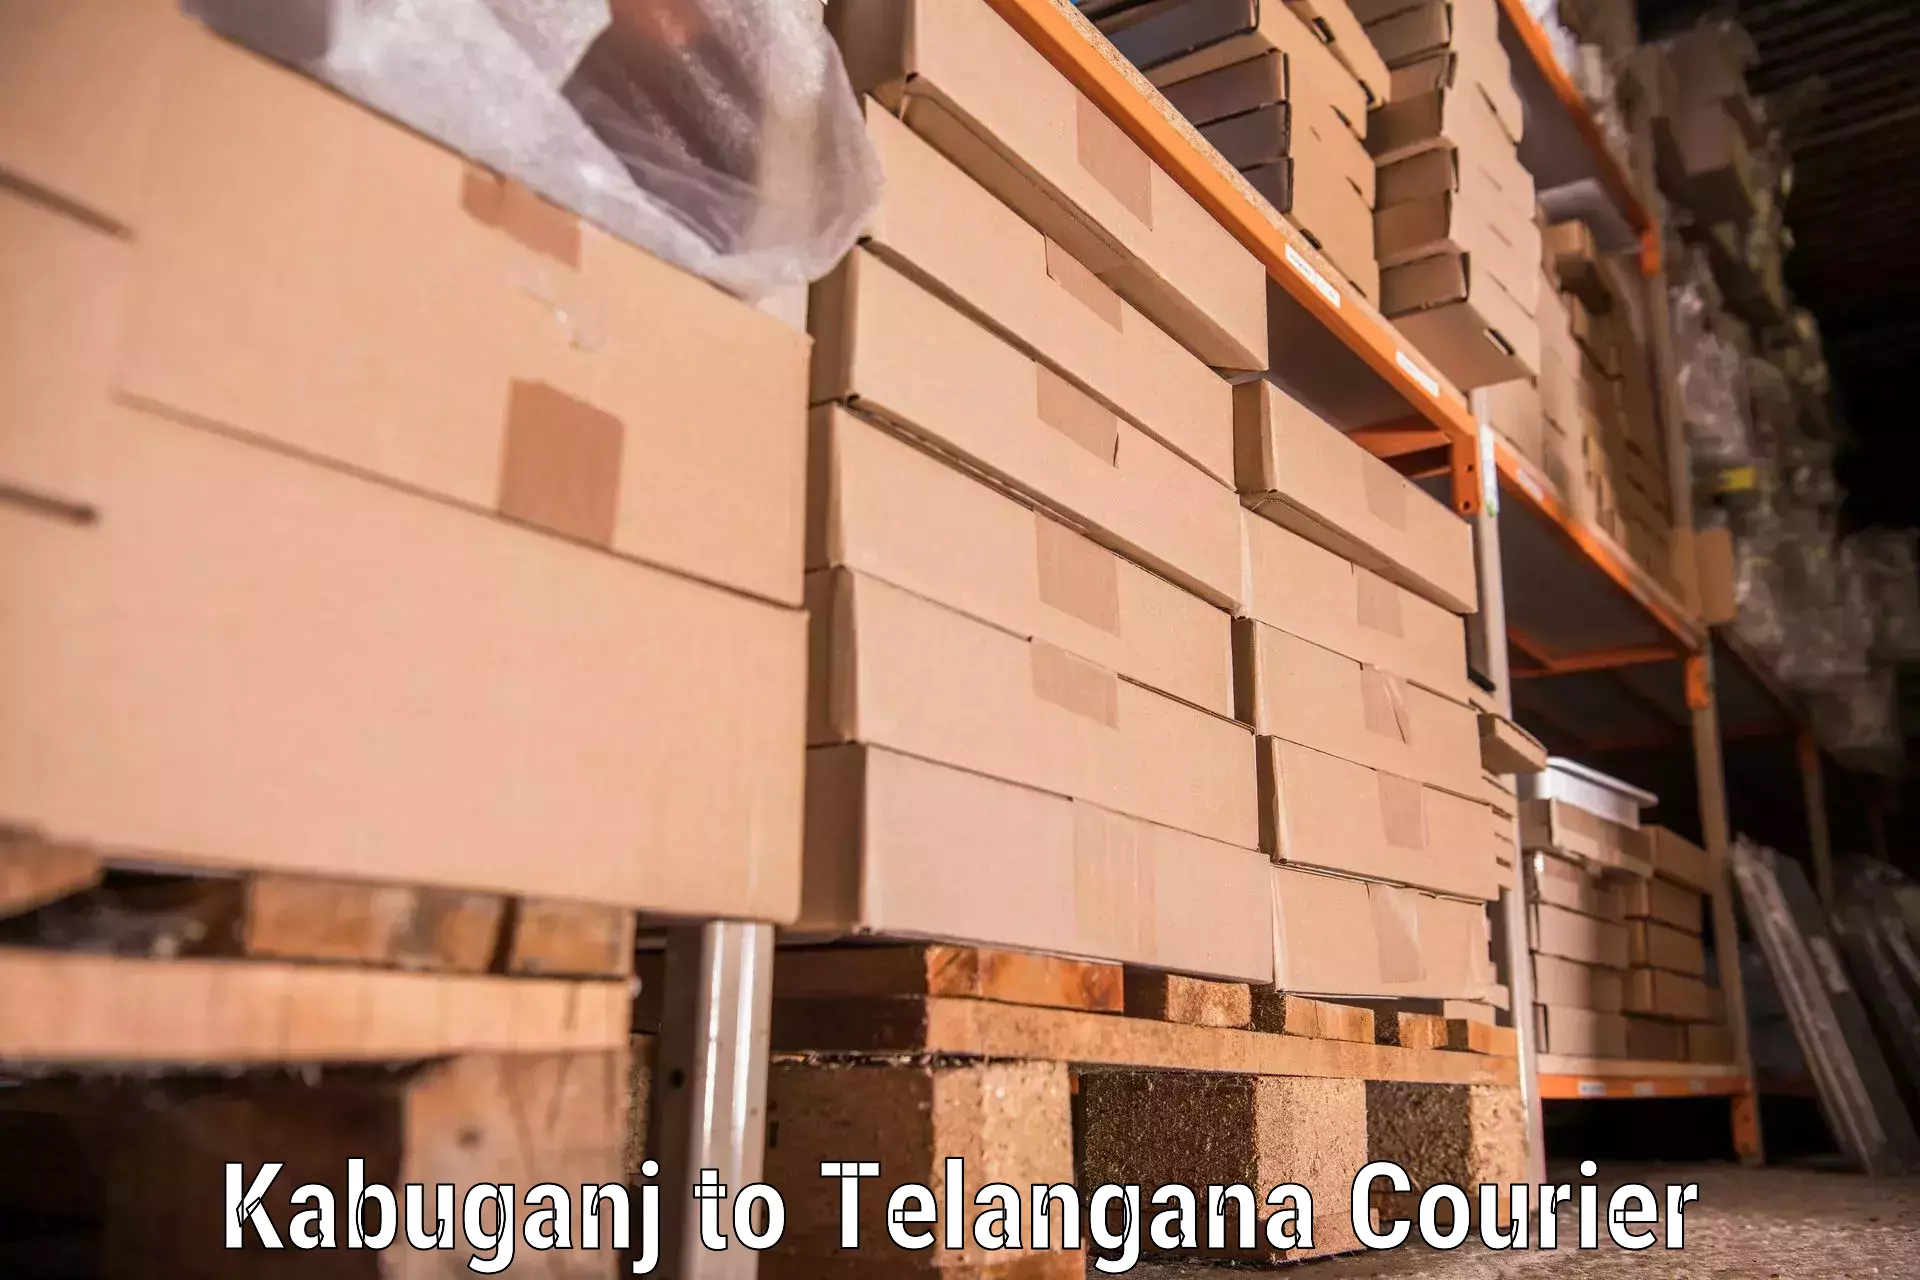 Customized furniture moving Kabuganj to Kothagudem